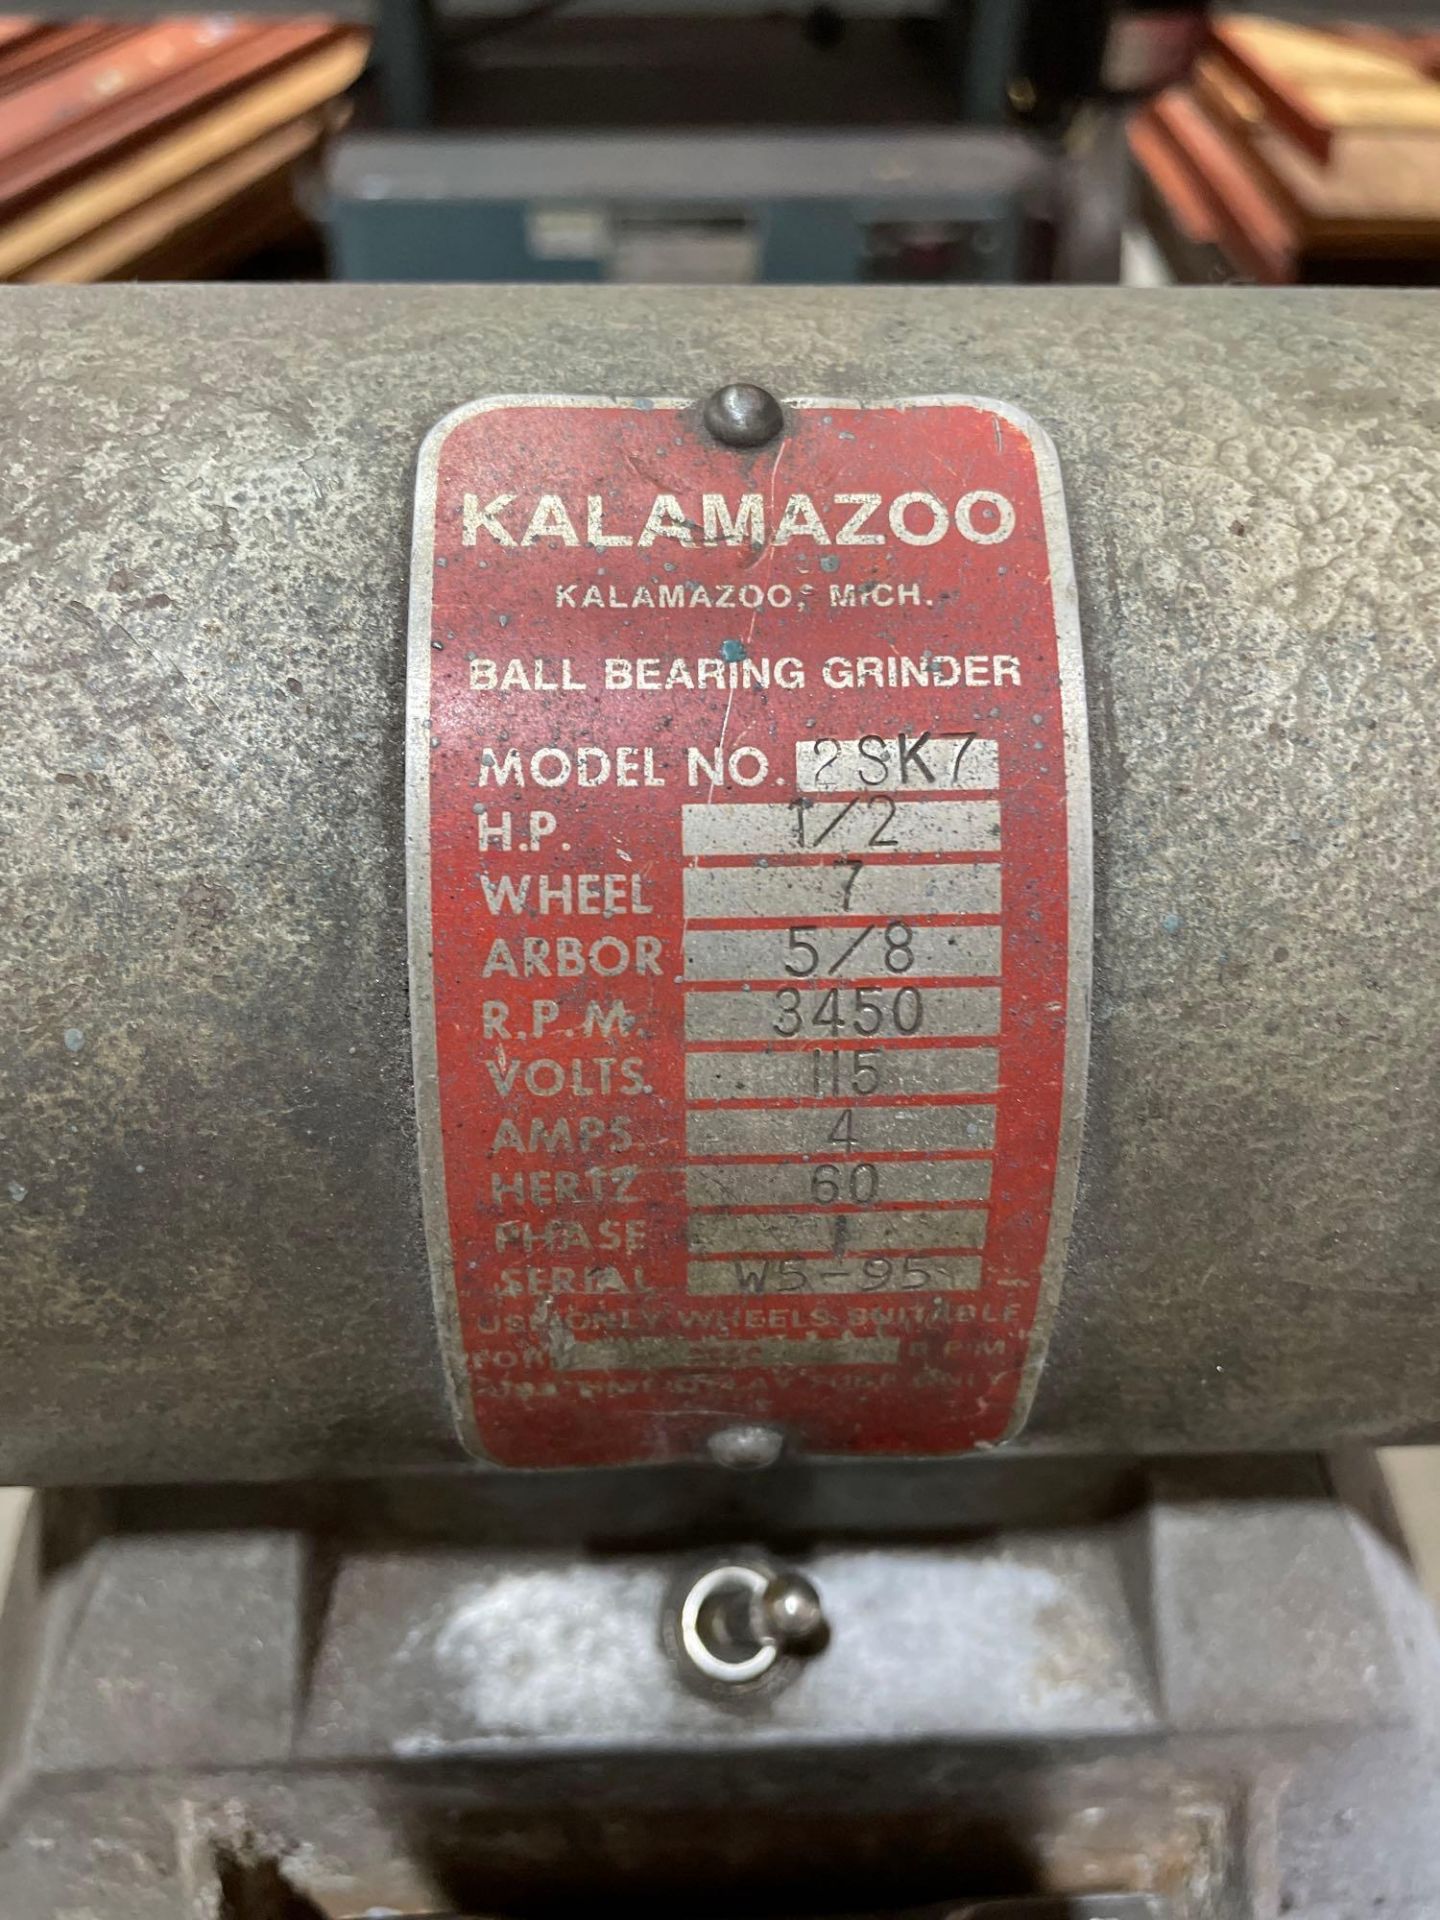 Kalamazoo Model 2SK7 Ball Bearing Grinder and Sander - Image 2 of 6